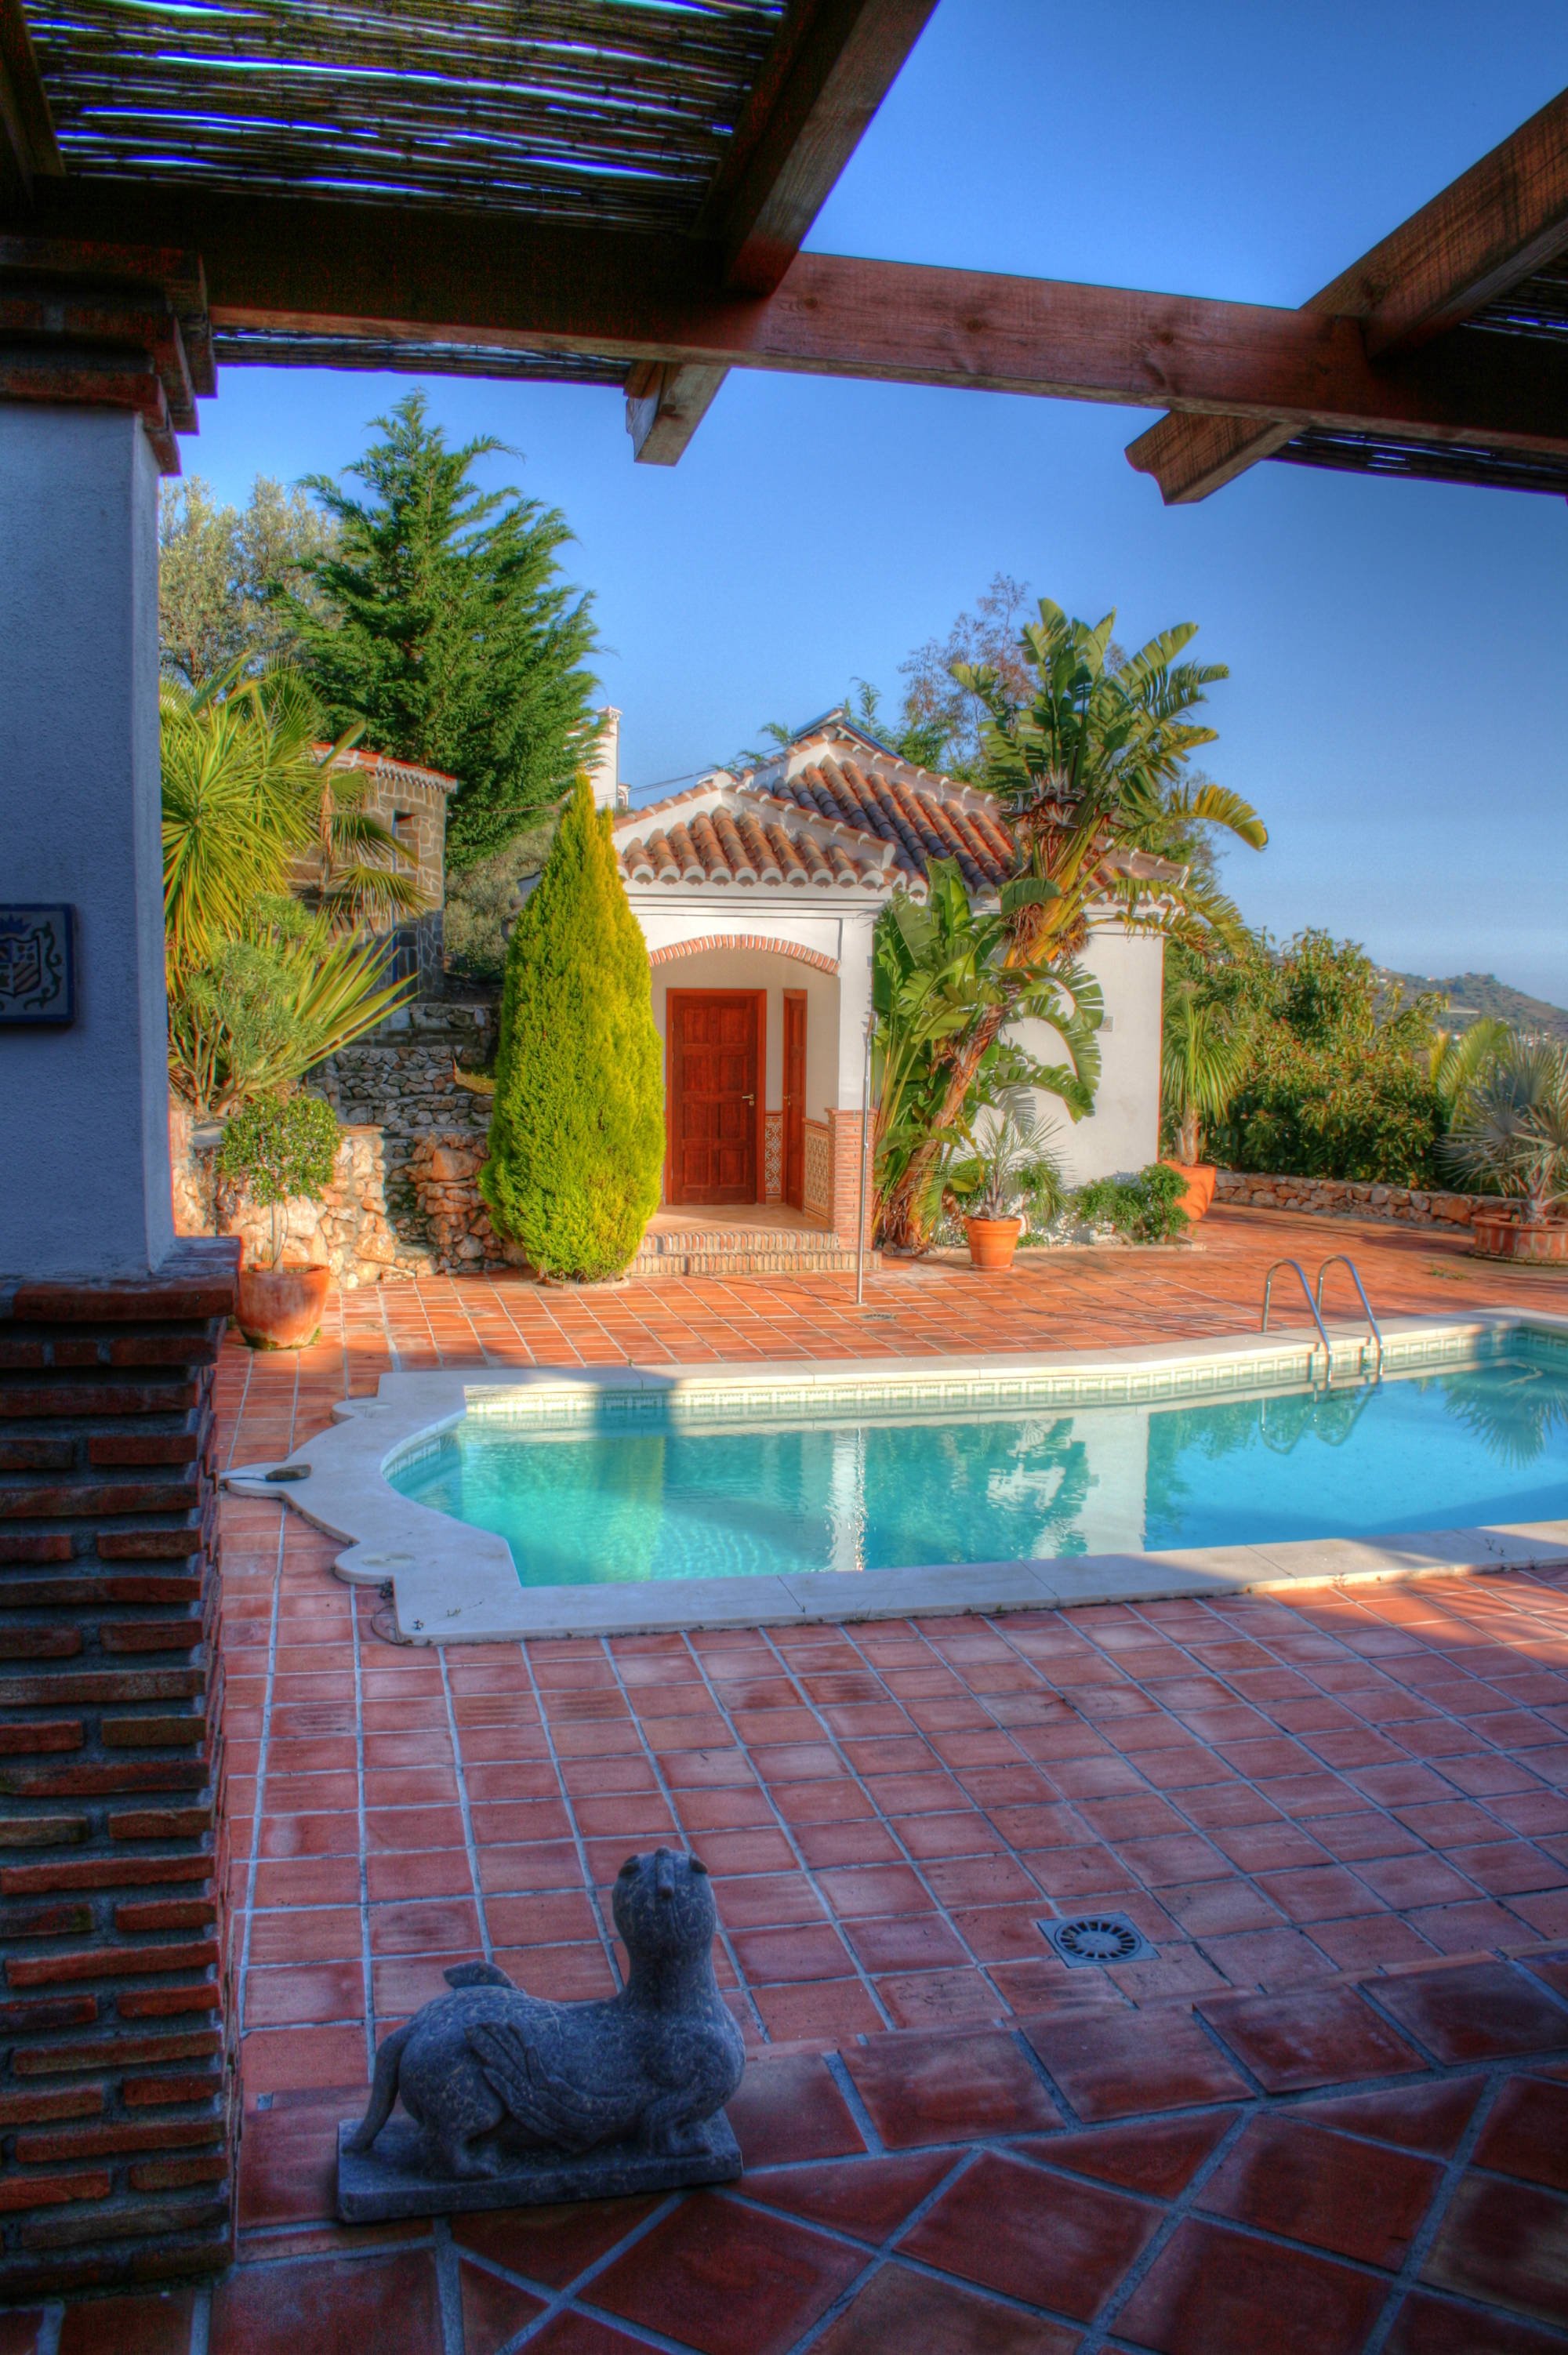 Urlop w Andaluzji, Hiszpania dom wakacyjny z basenem i widokiem na morze.